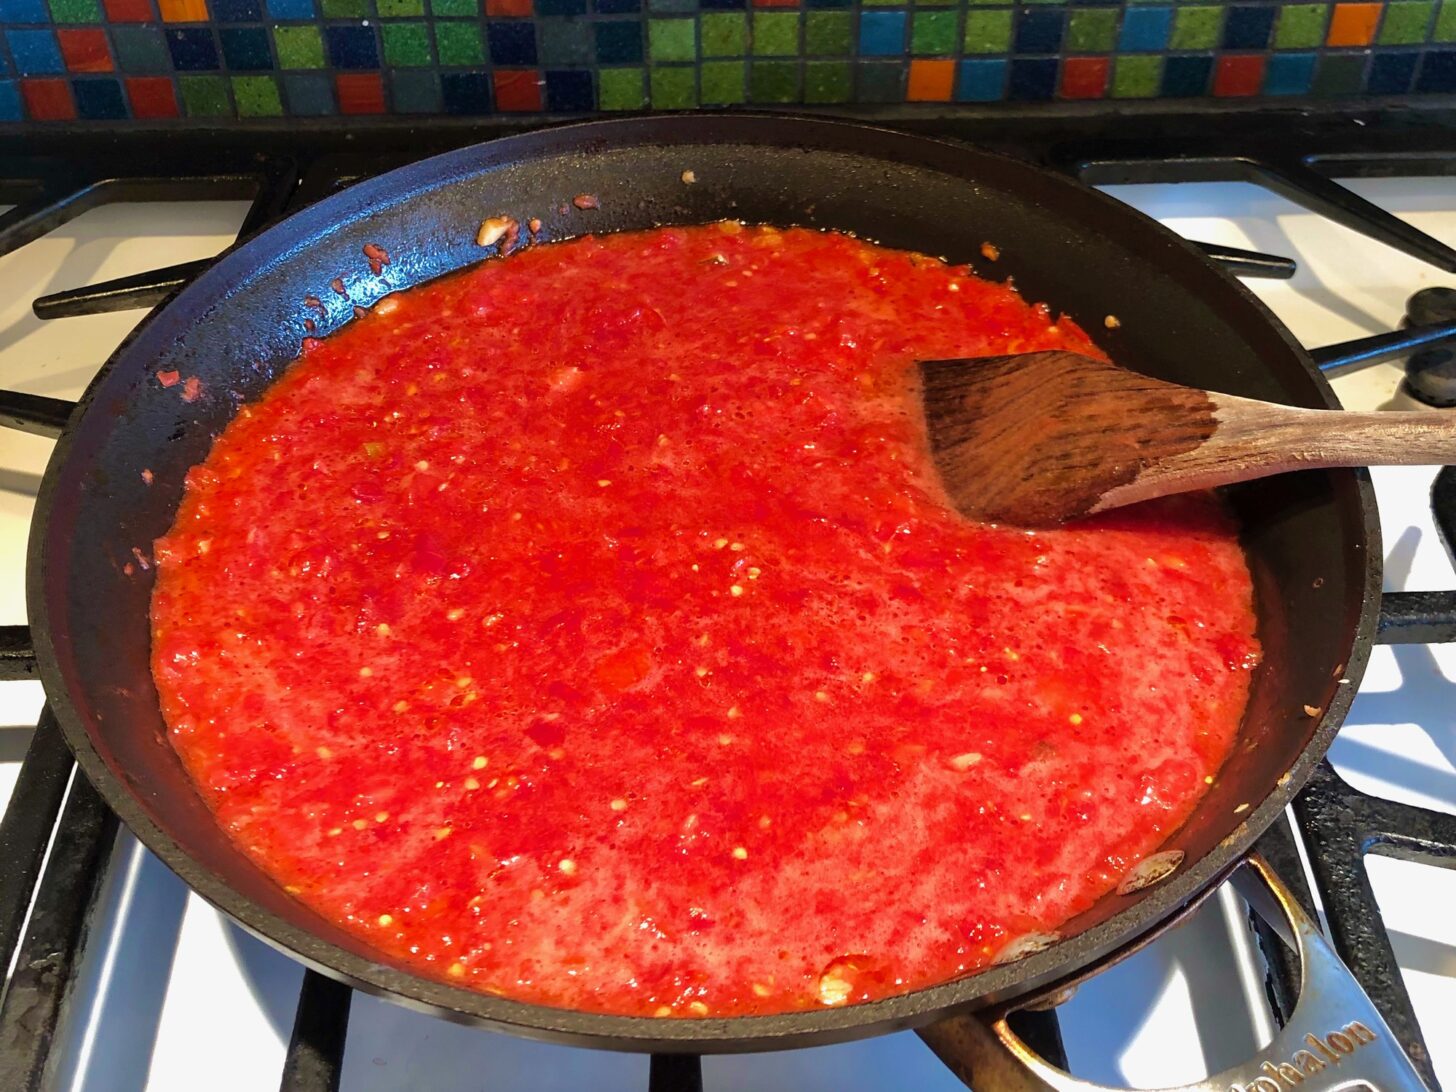 炉子上炖着一锅自制的番茄酱。一只木勺从酱汁里伸出来了。